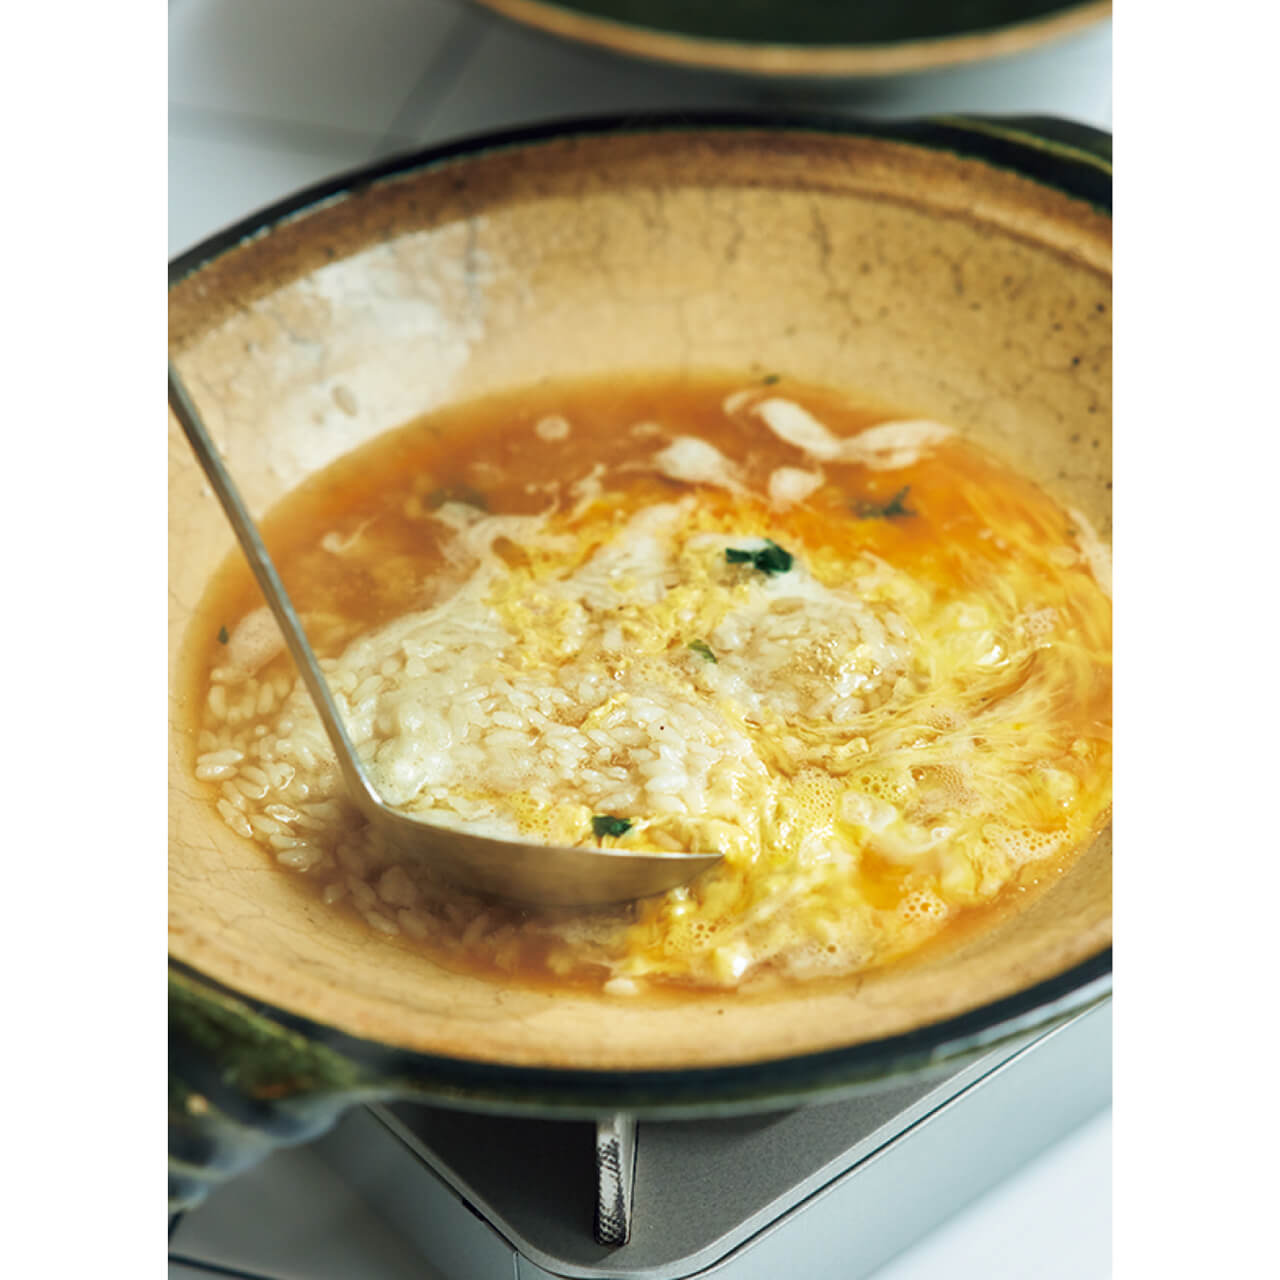 残ったスープにごはんを入れ、軽く煮る。十分温まったら、全体に溶き卵を流し入れる。「卵の火の通し加減は好き好きなのですが、私はしっかりと火を入れるほうが好みです。スープに残る、春菊の香りを味わって」（ウー・ウェンさん）